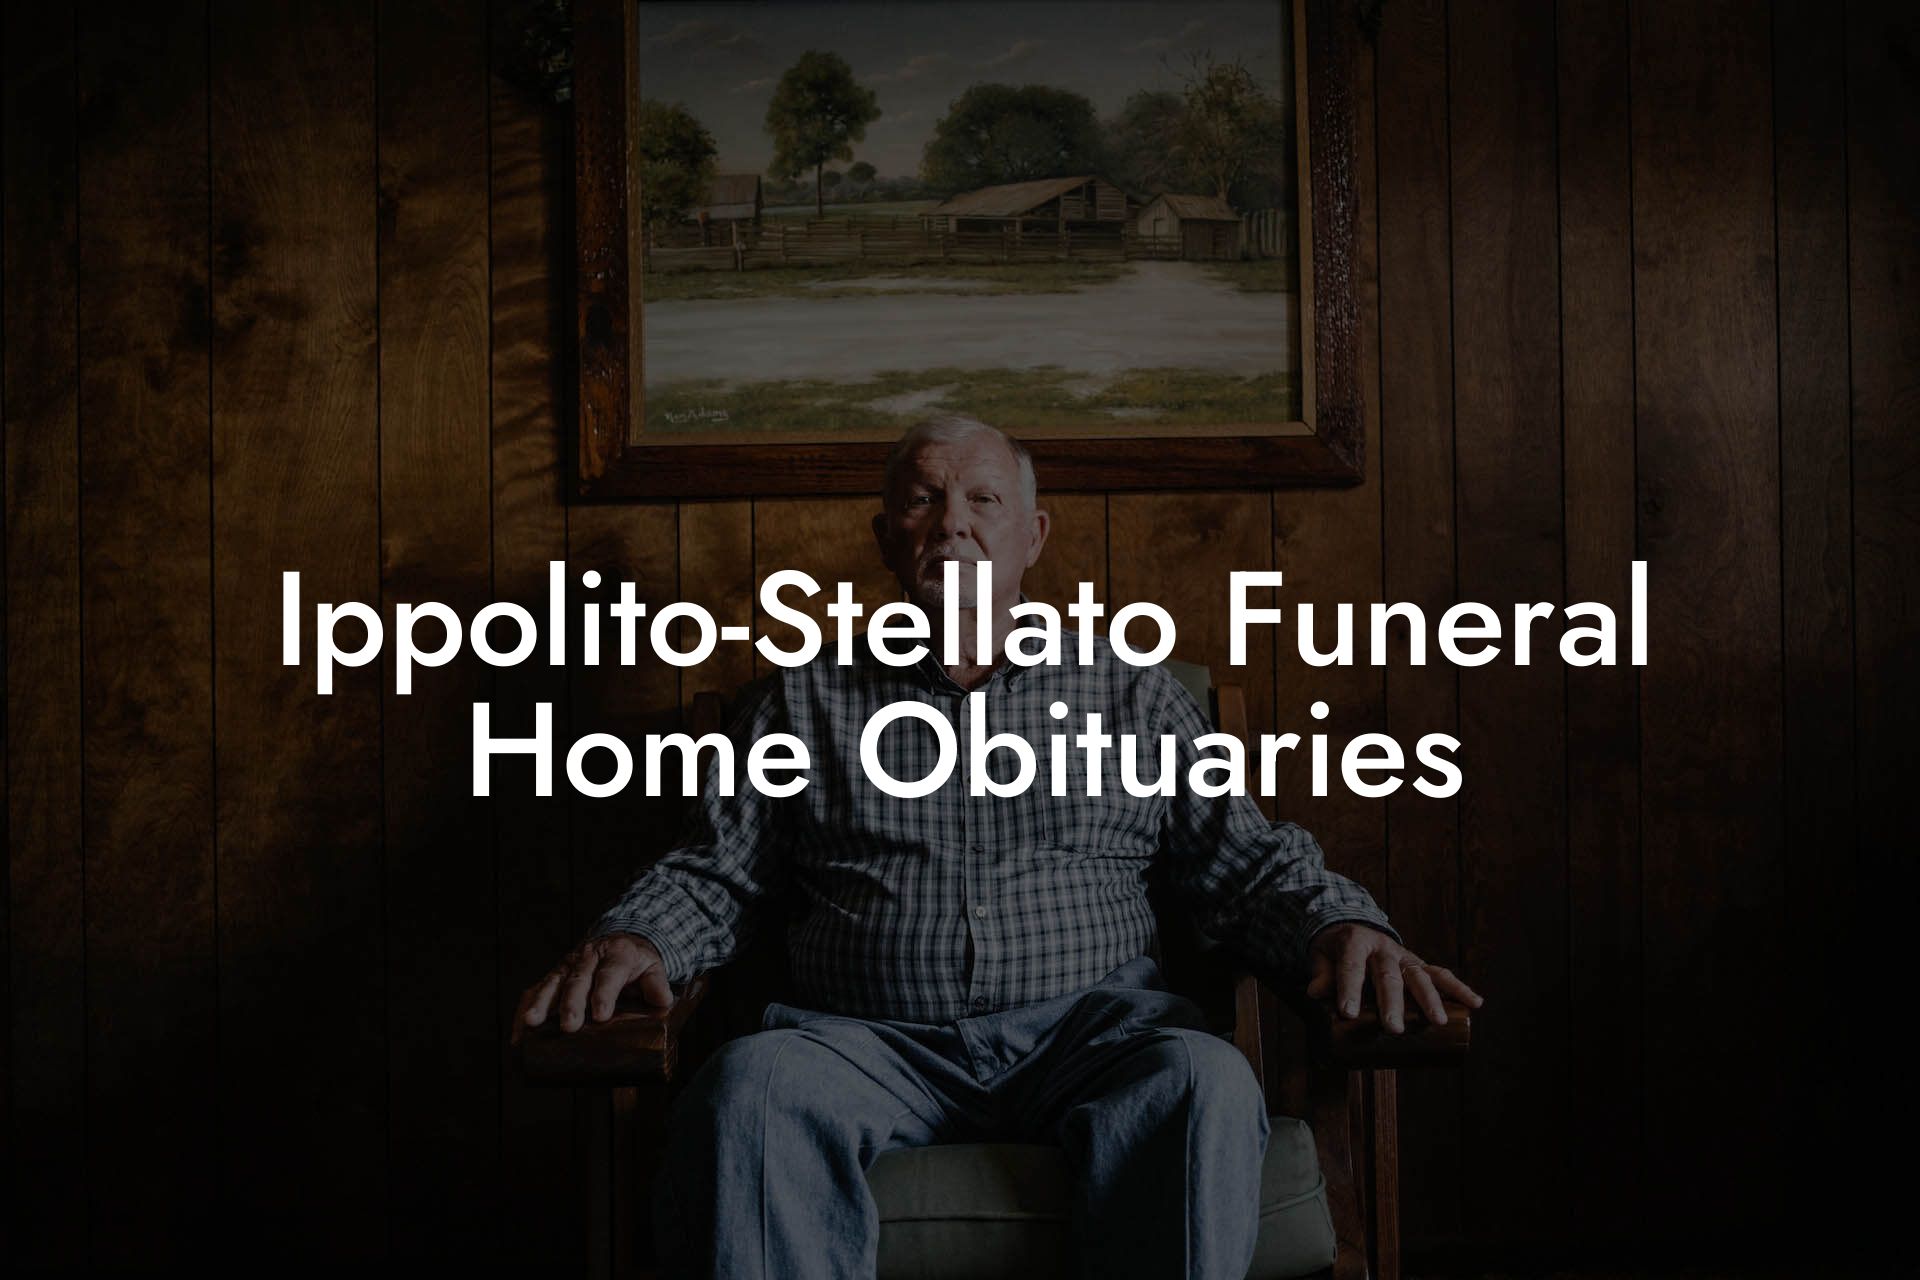 Ippolito-Stellato Funeral Home Obituaries